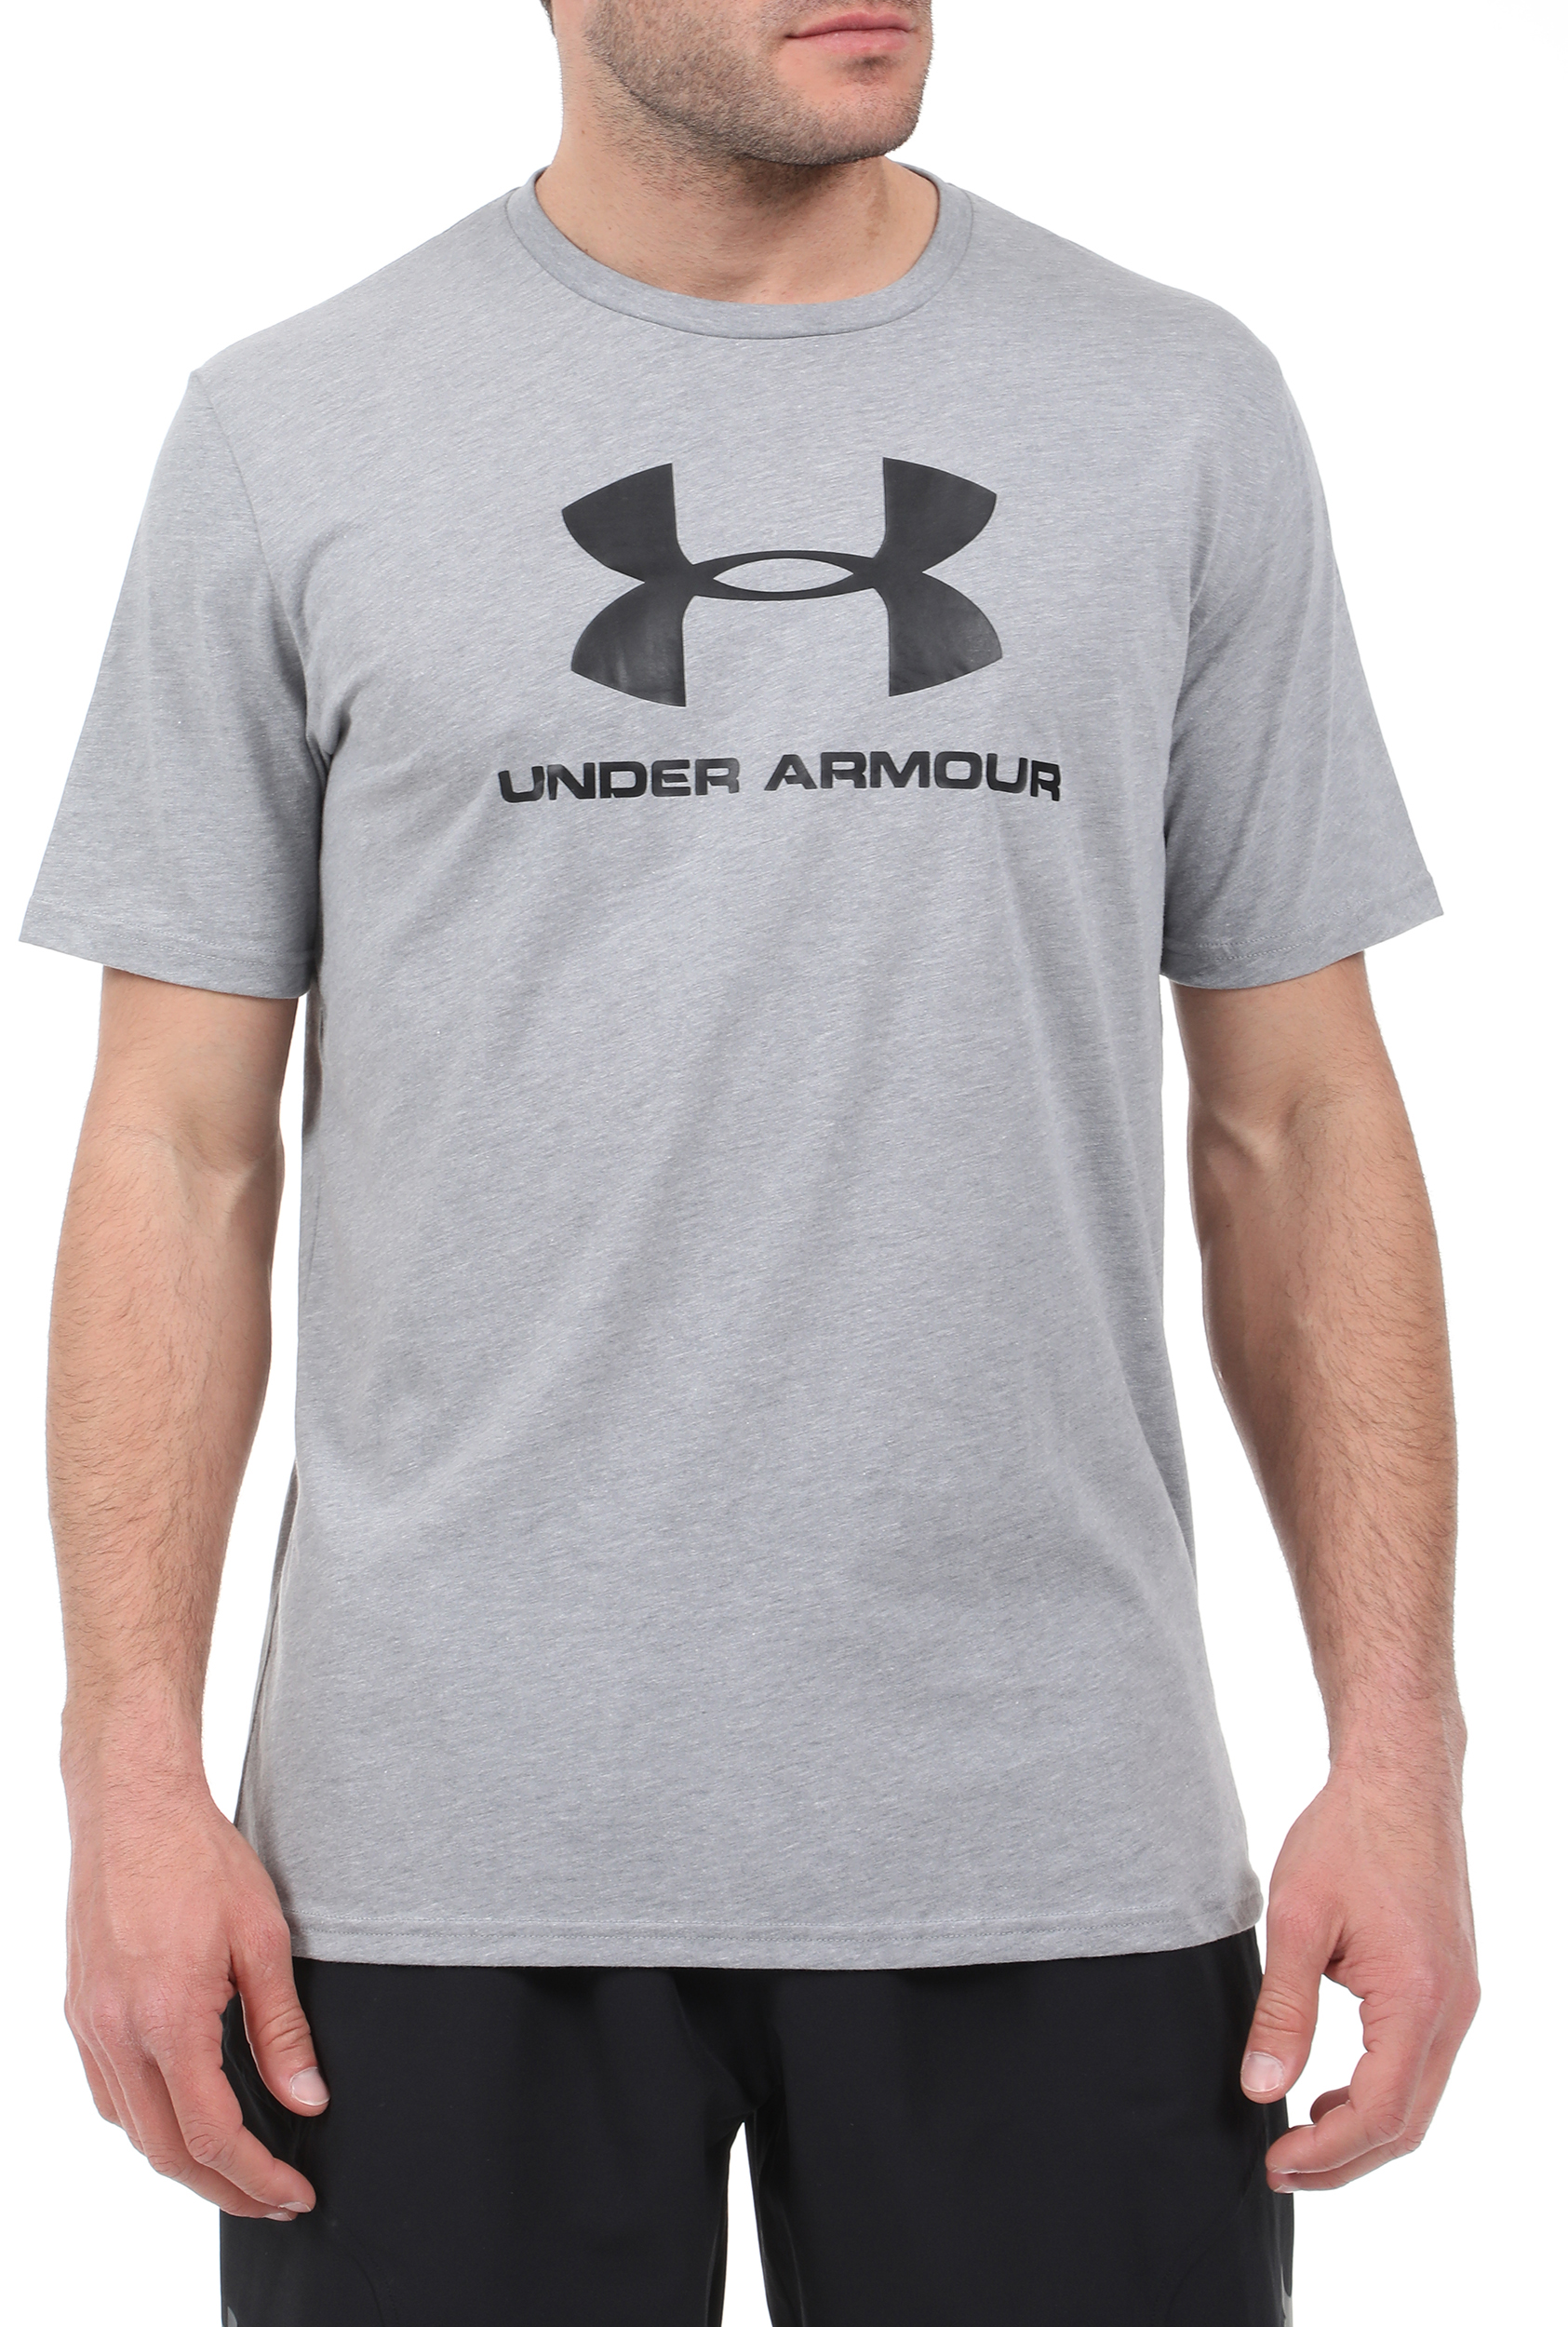 Ανδρικά/Ρούχα/Αθλητικά/T-shirt UNDER ARMOUR - Ανδρικό t-shirt UNDER ARMOUR SPORTSTYLE γκρι